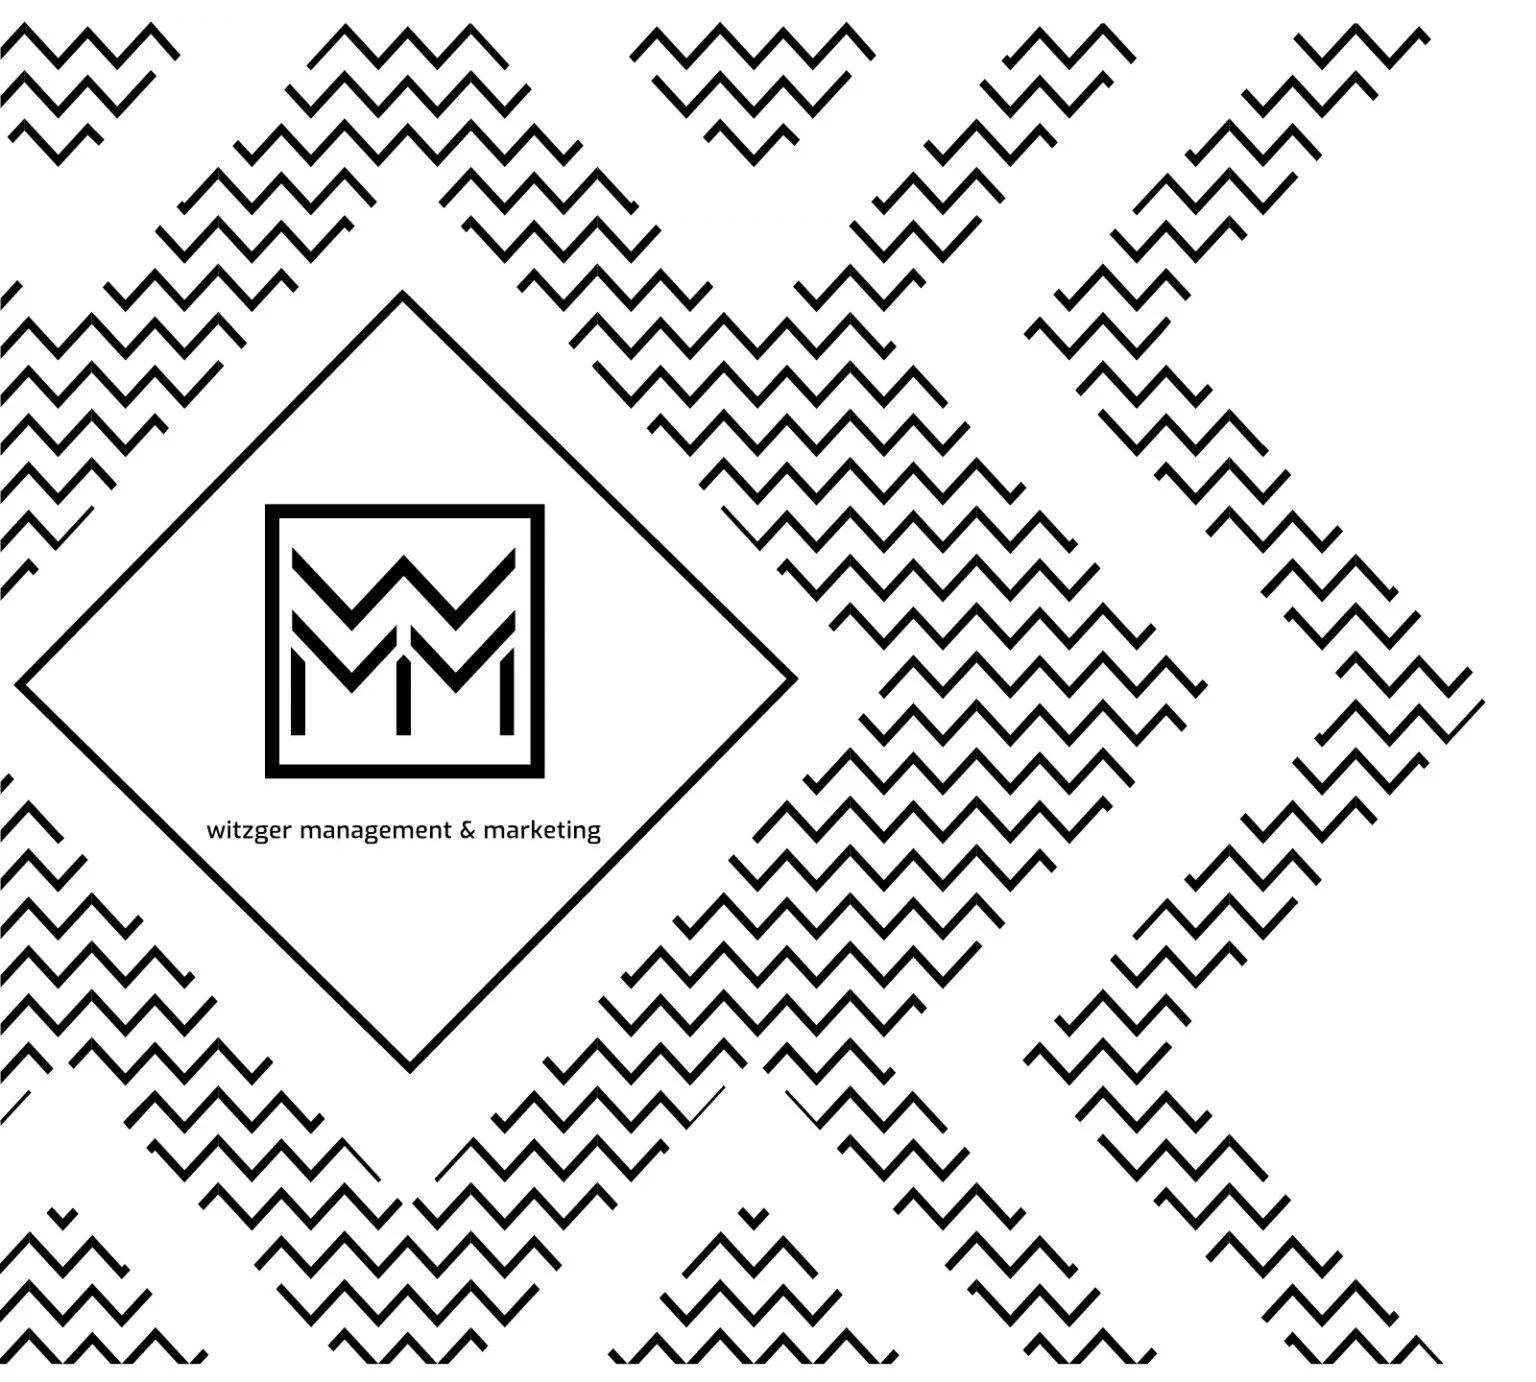 Muster mit sich wiederholenden zickzack Linien, in der Mitte ein Logo mit der Aufschrift "witzger management & marketing